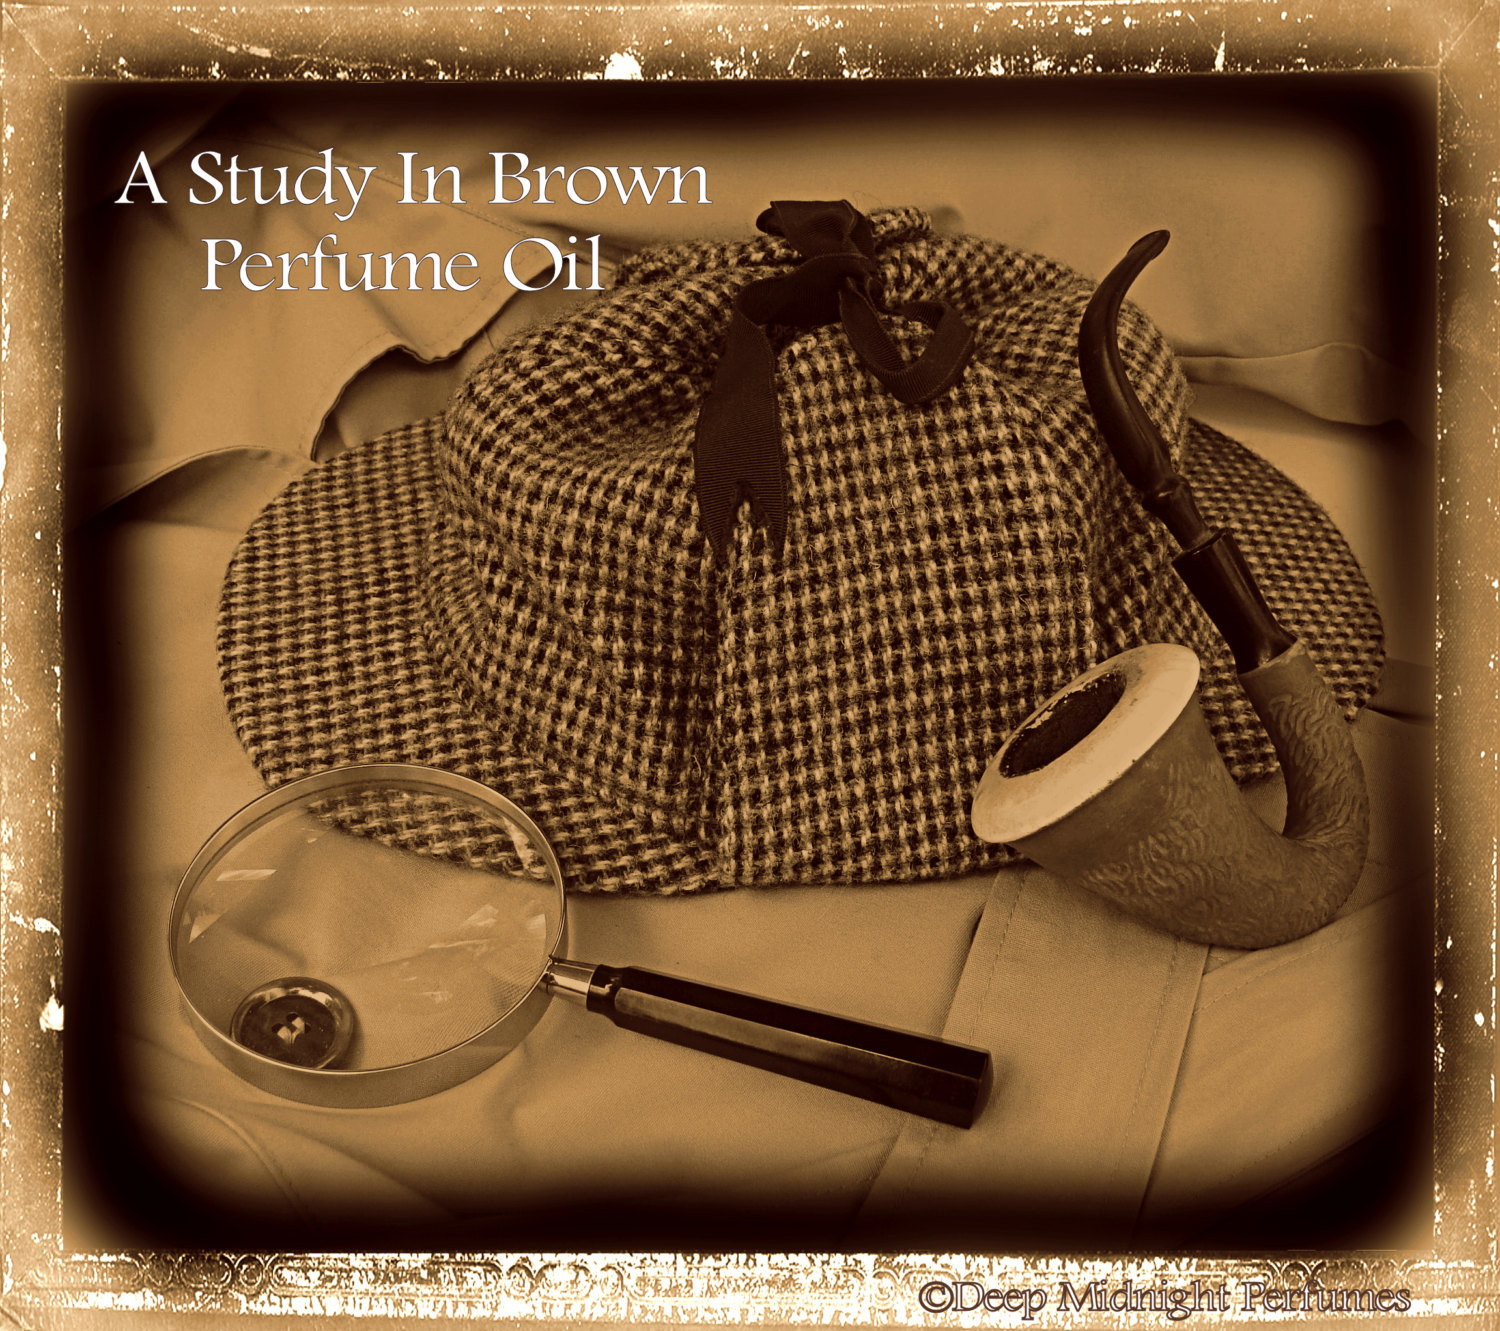 A Study in Brown™ Perfume Oil - Sherlock Holmes Inspired, Copal, Tonka Bean, Oak Wood Smoke, Toasted Sugar